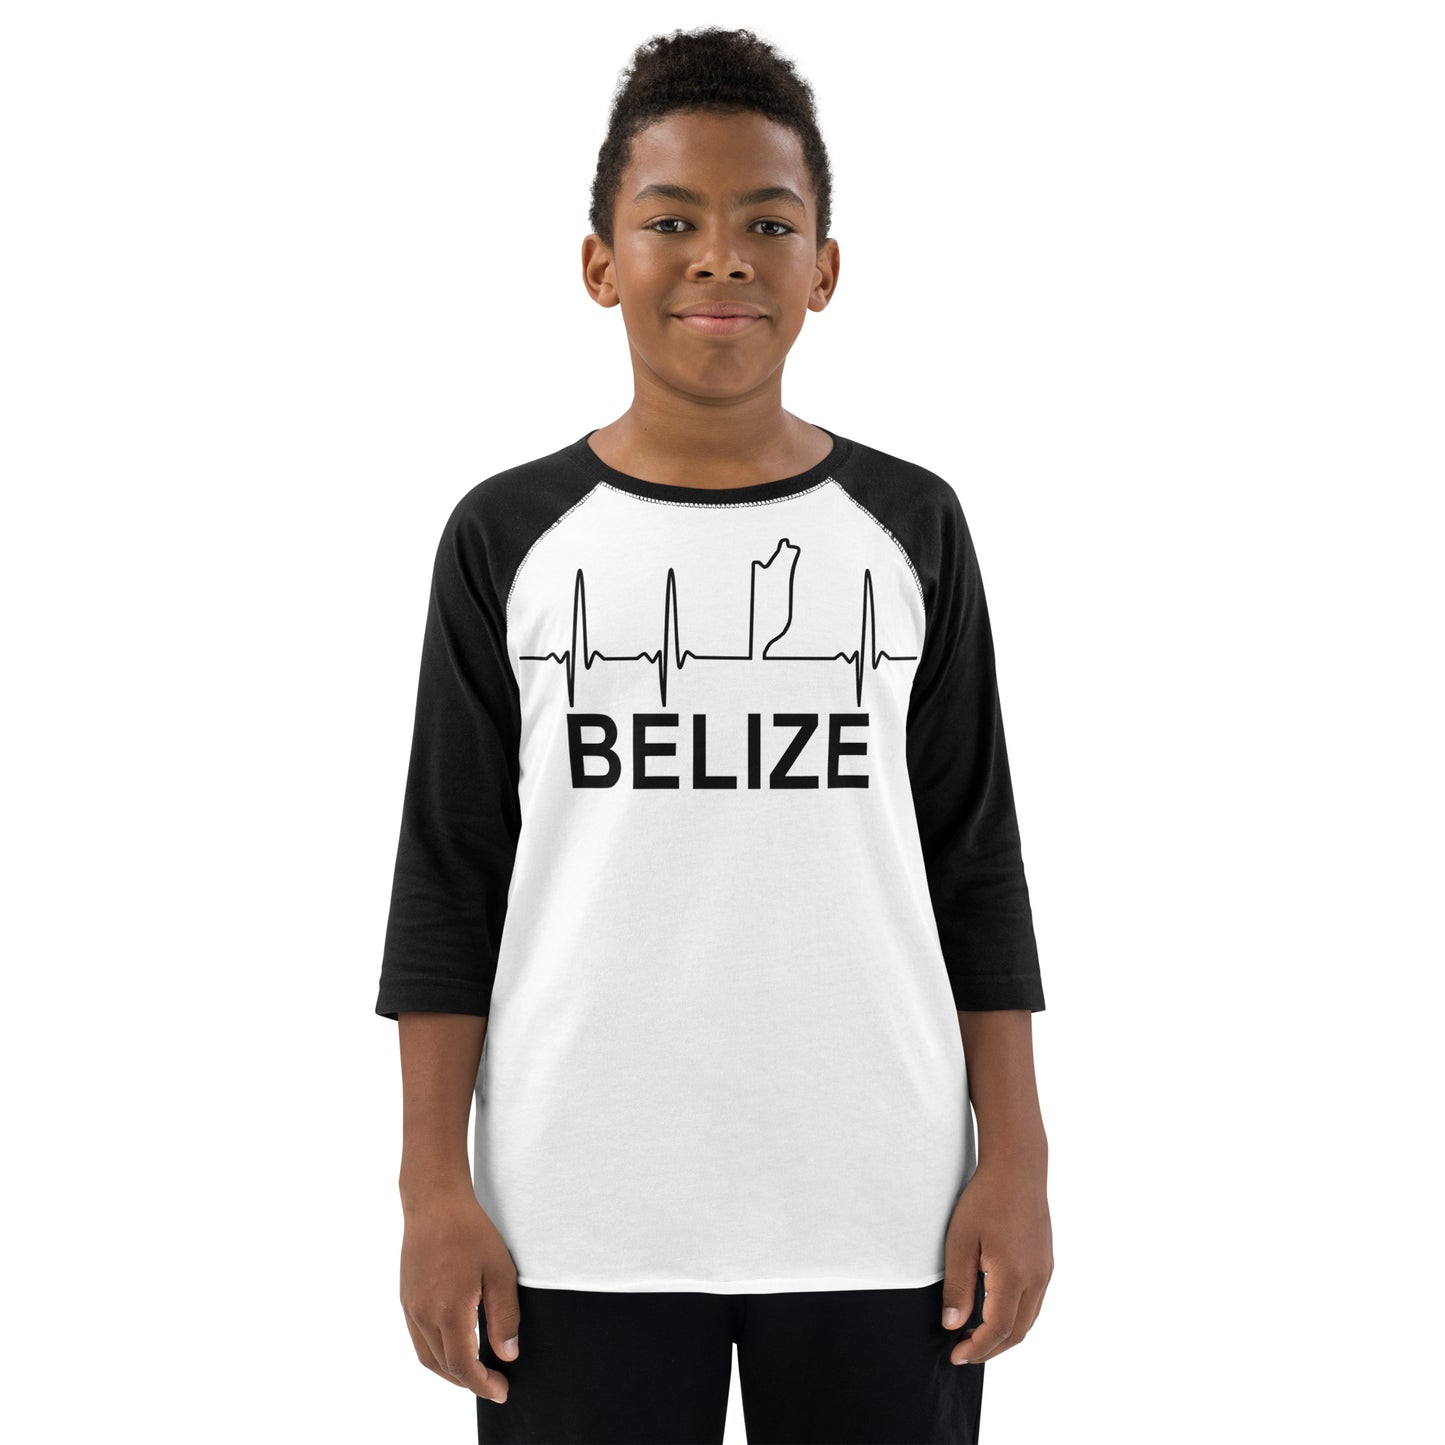 Belize Lifeline Youth baseball shirt